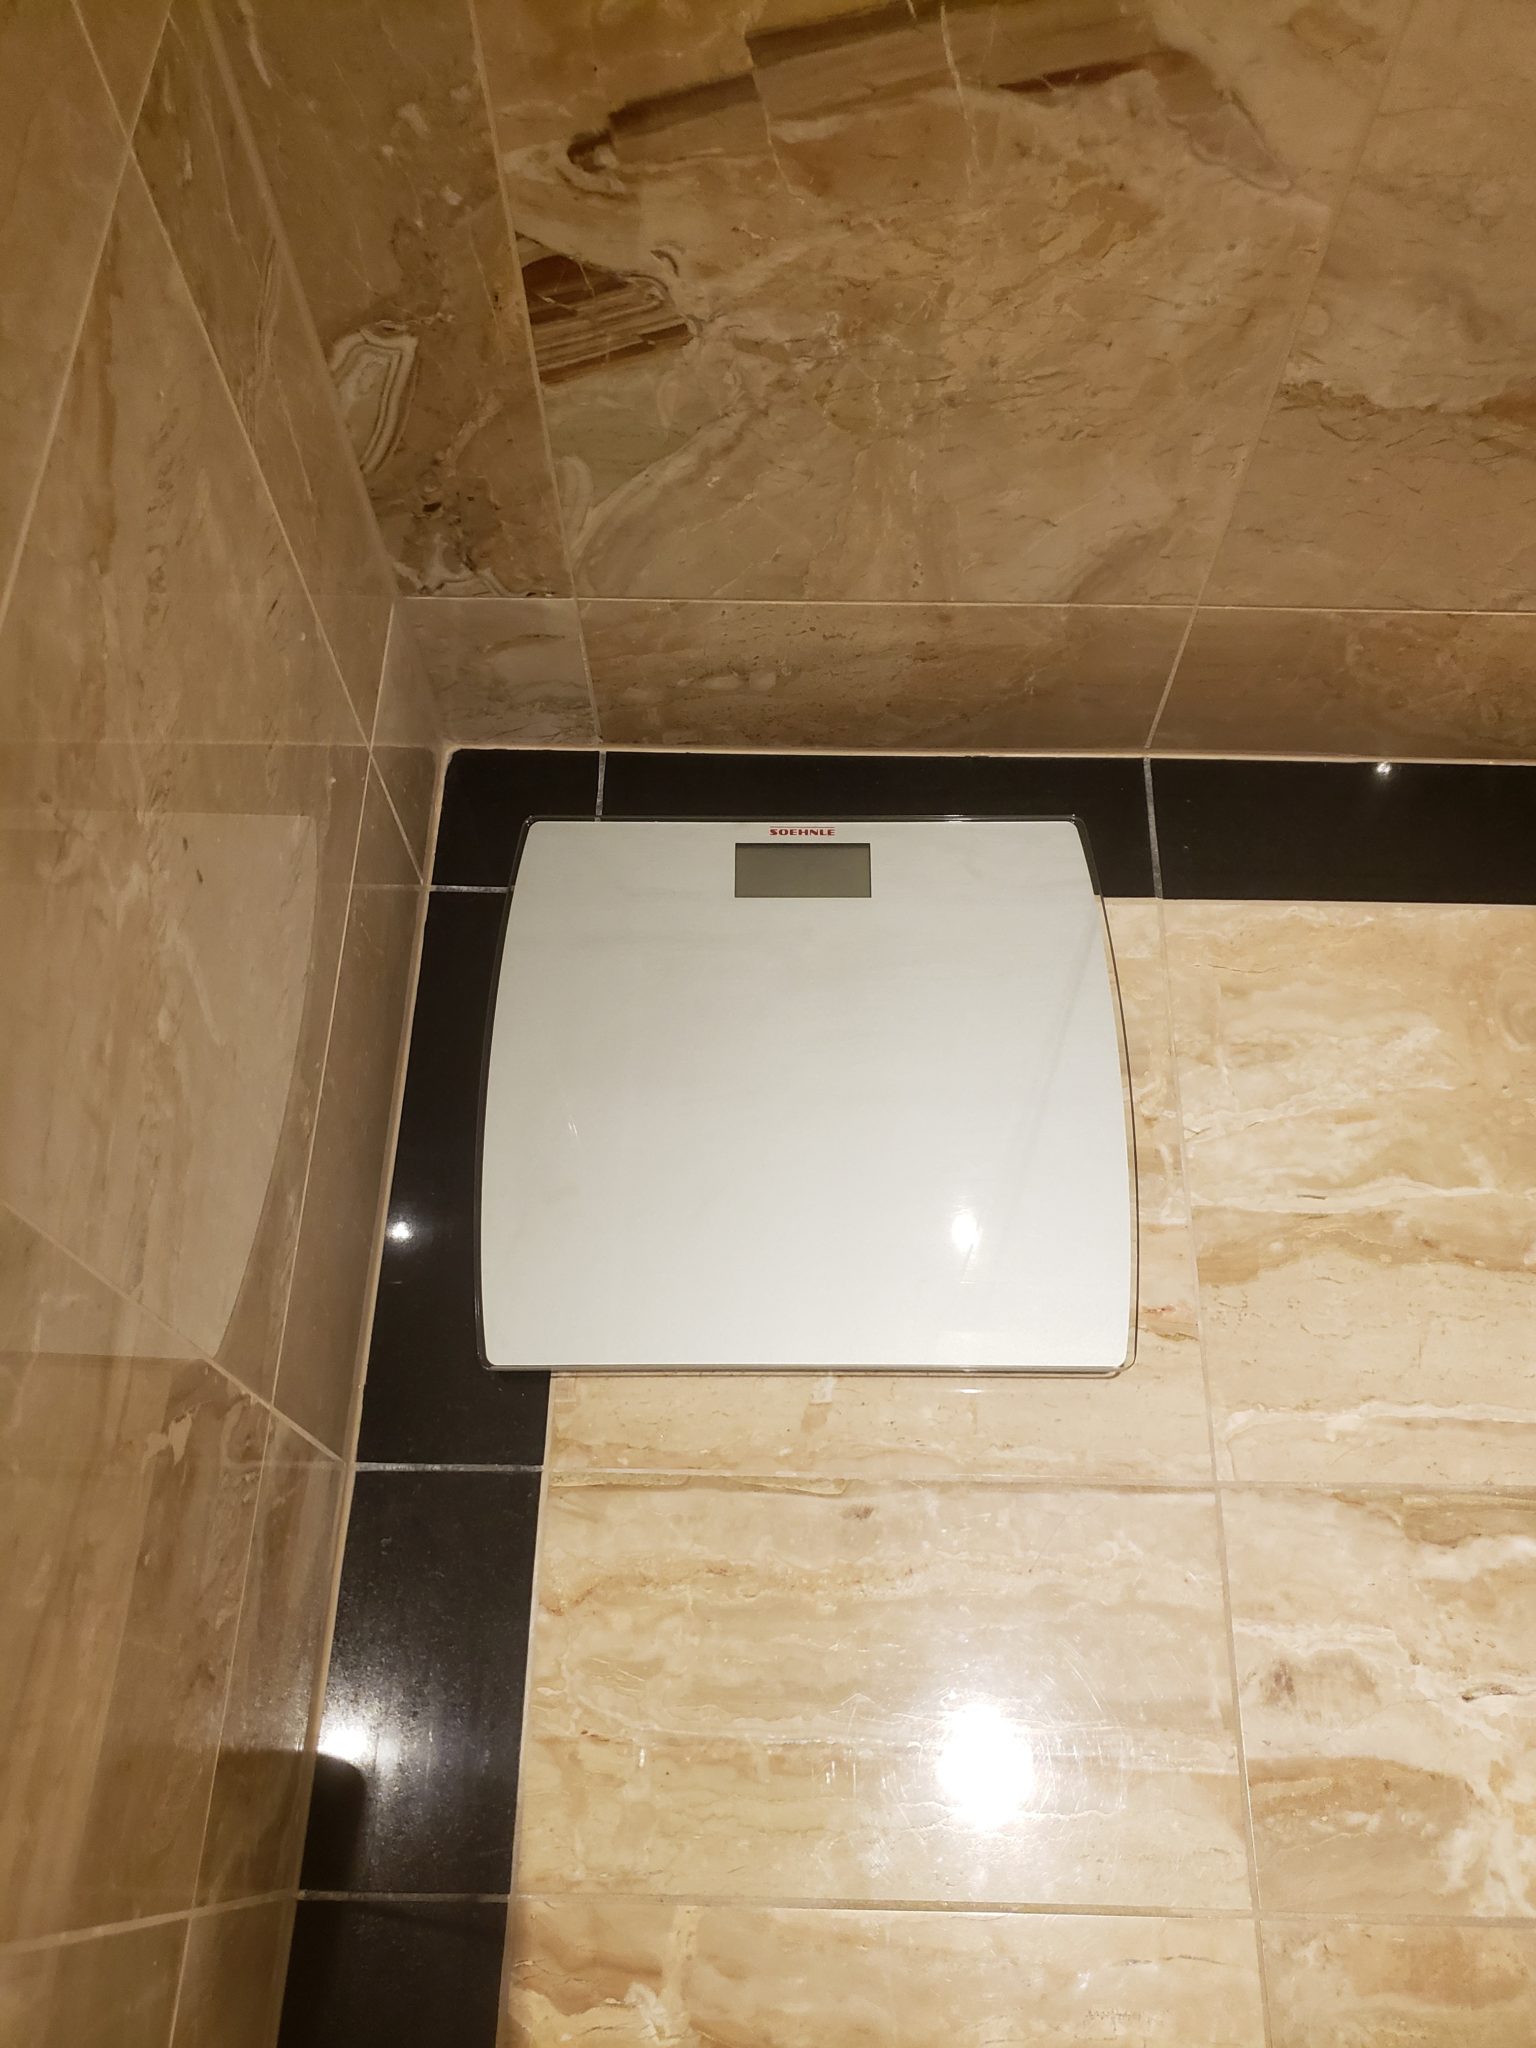 a scale on a tile floor